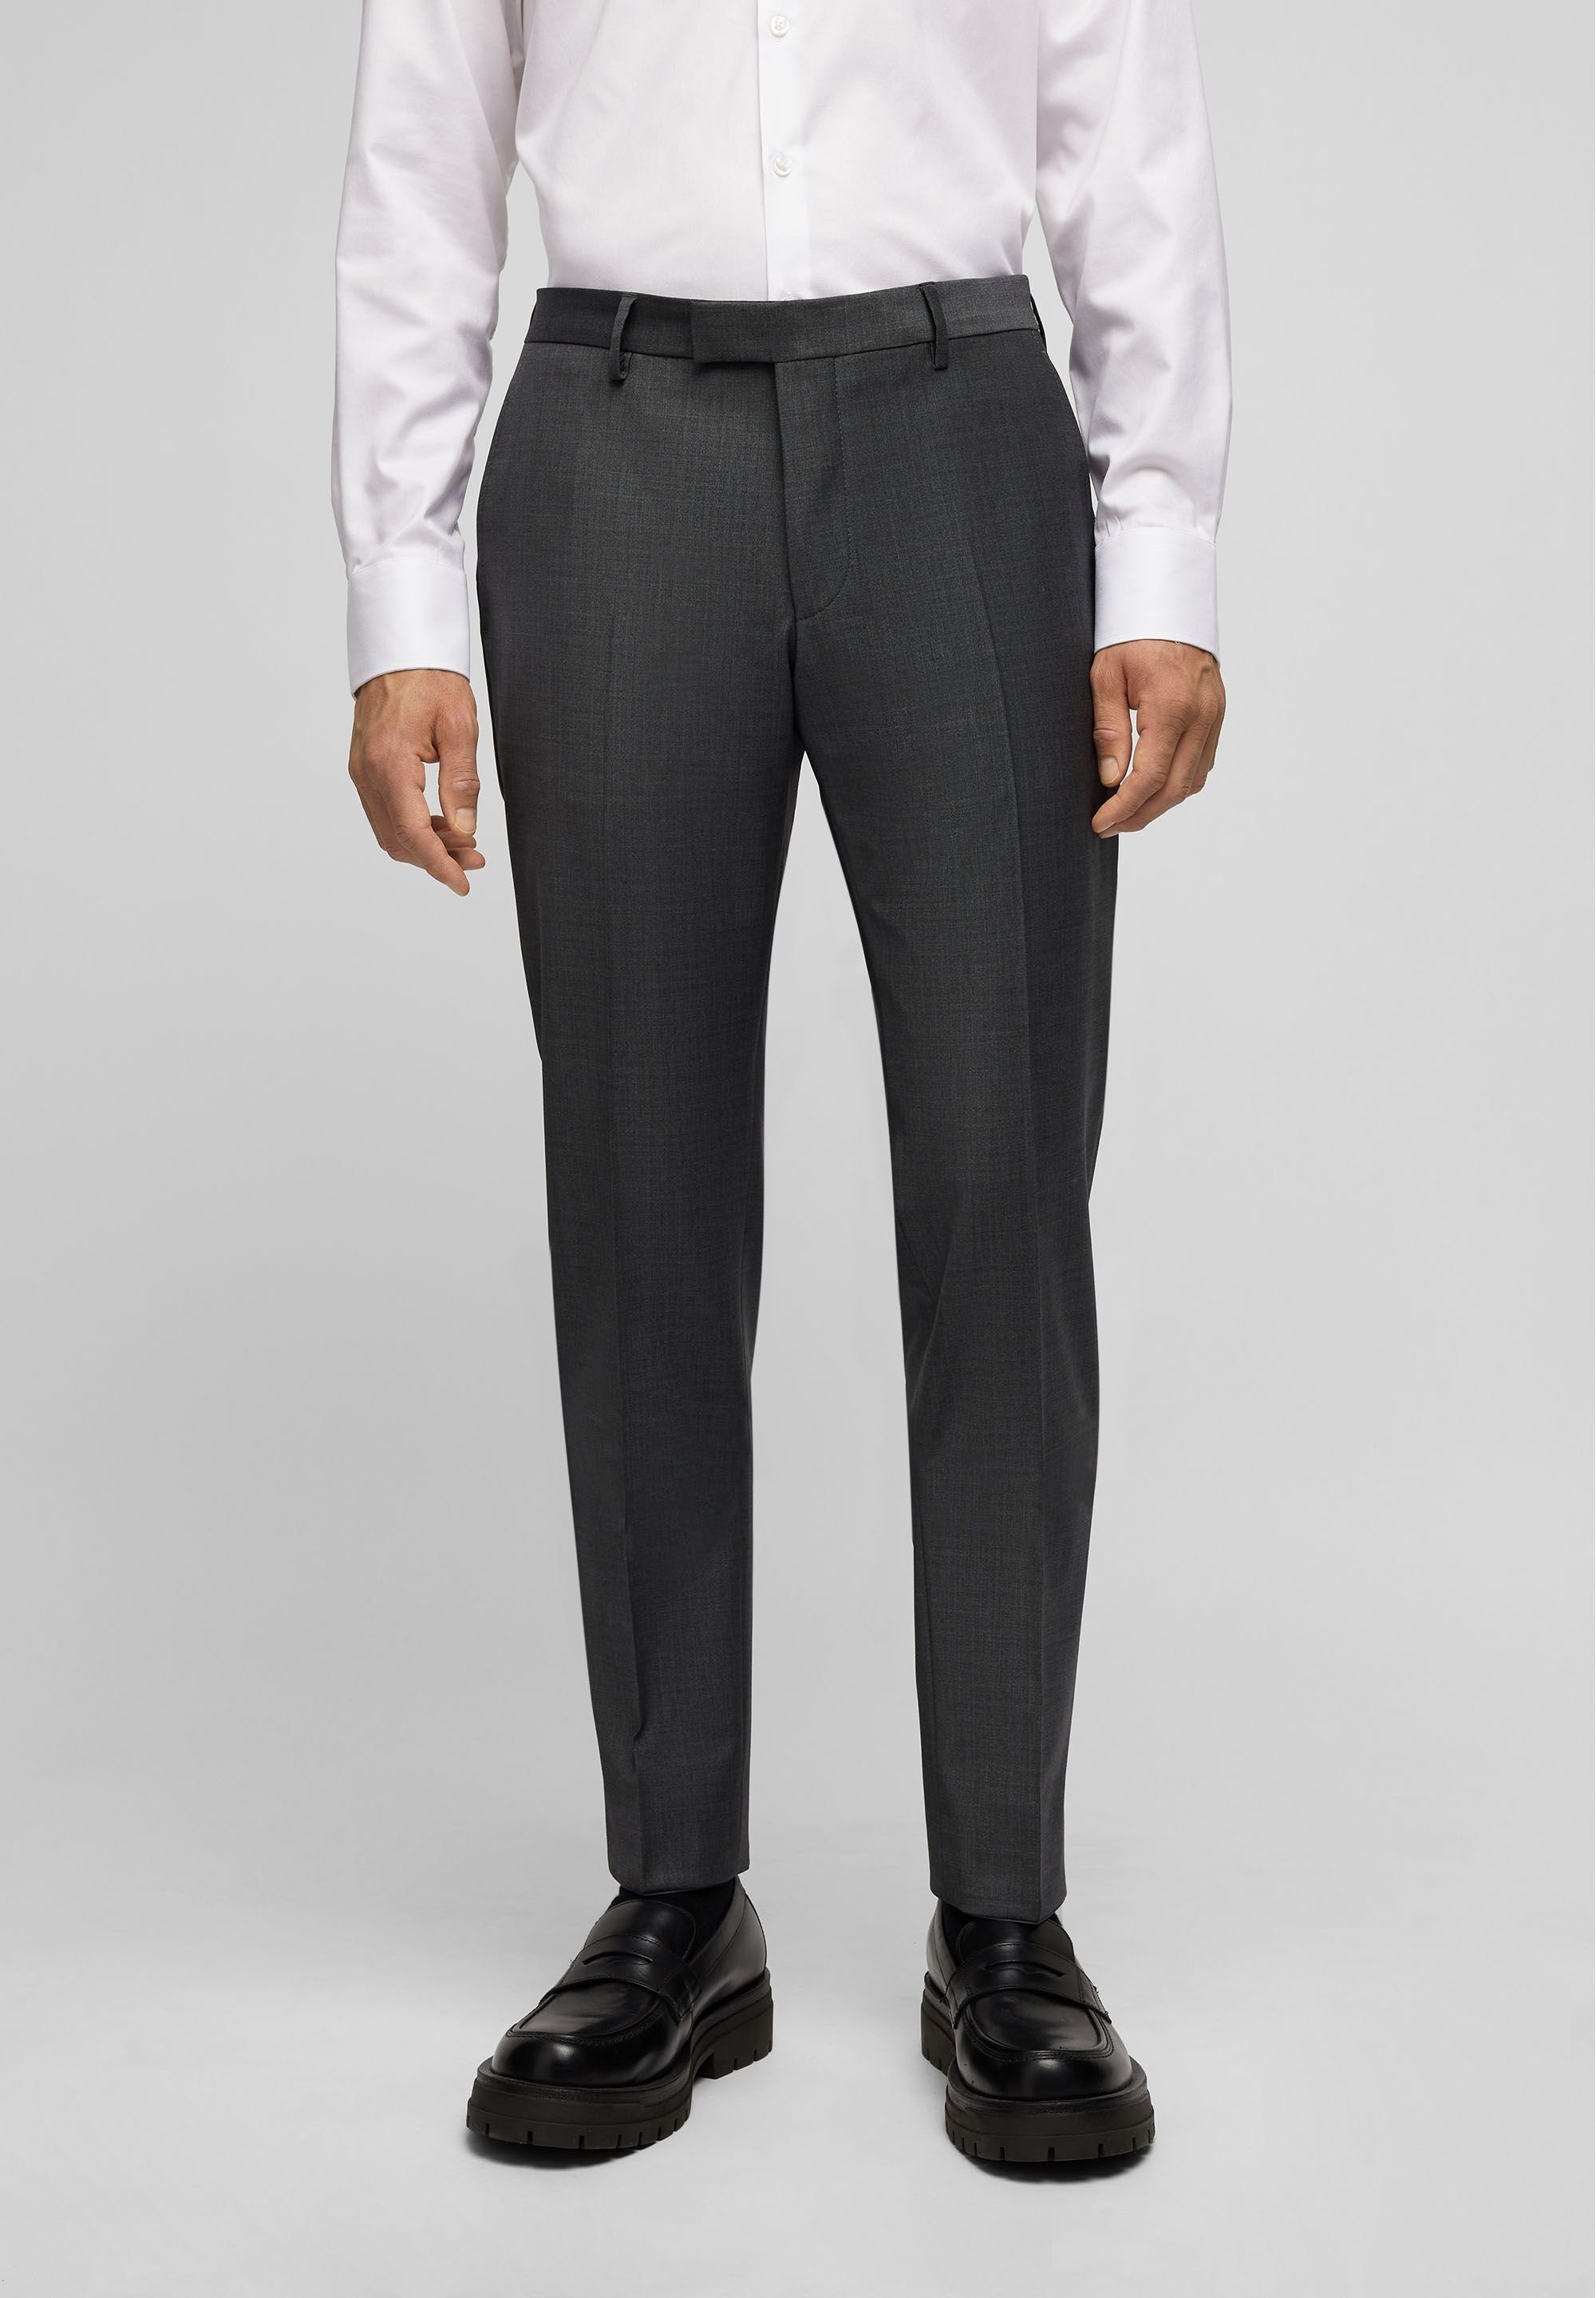 HECHTER PARIS Anzughose mit zweifarbigem Muster | Anzughosen